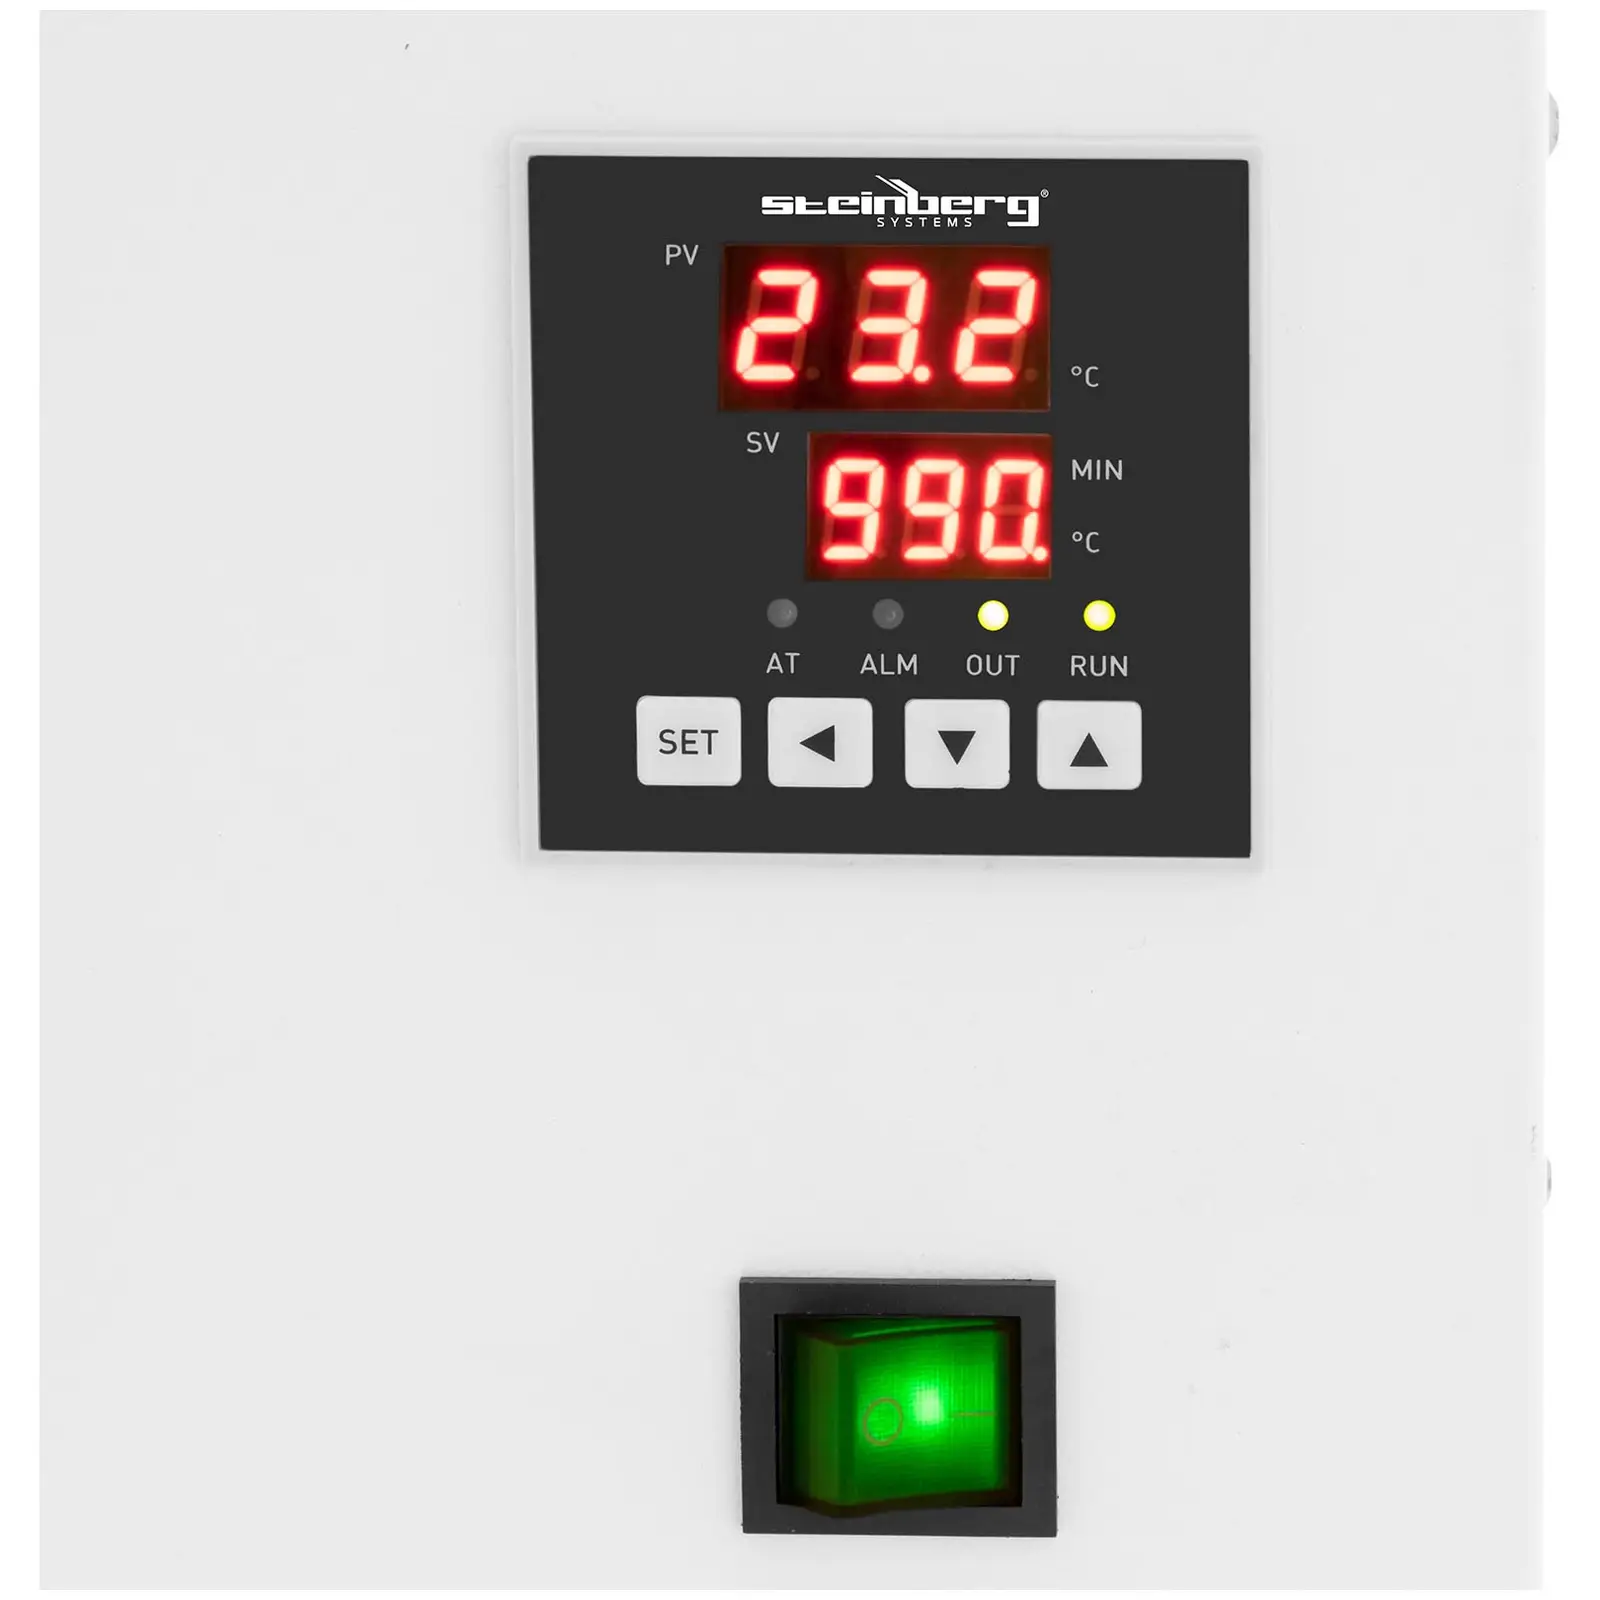 Thermostatisches Wasserbad - digital - 11 l - 5 - 100 °C - 420 x 180 x 150 mm